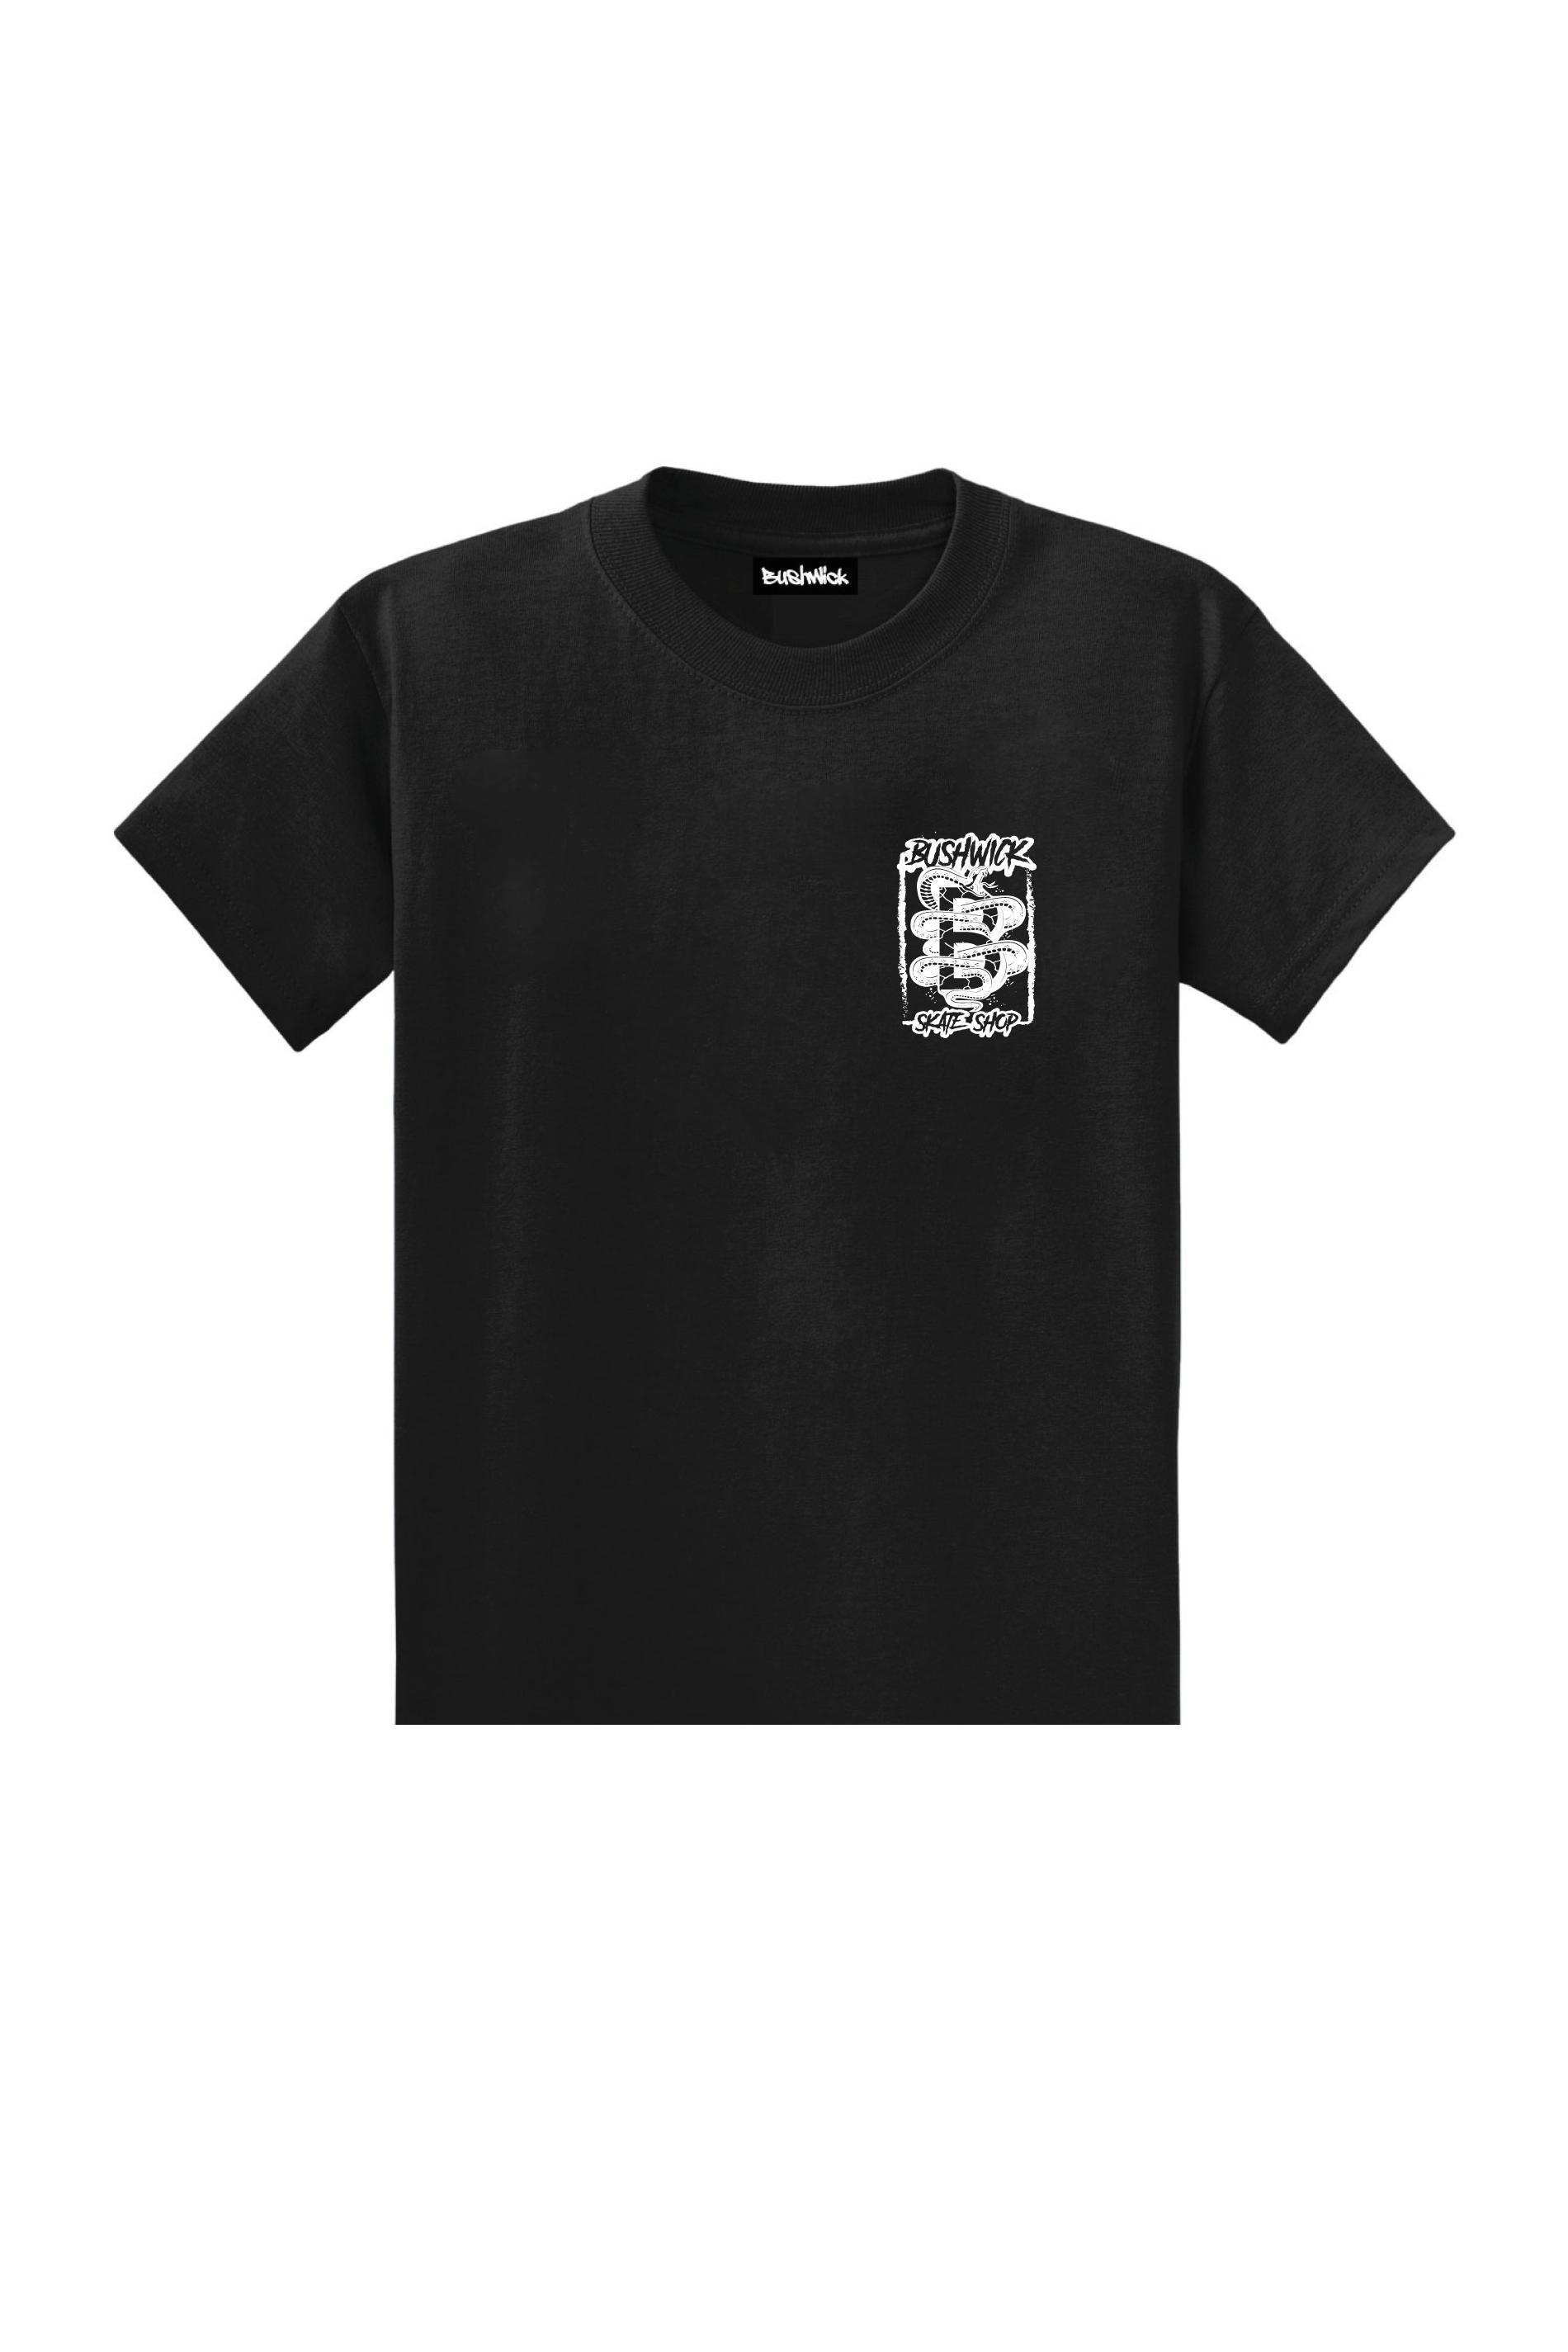 Bushwick T-Shirt Unisex Old Skool